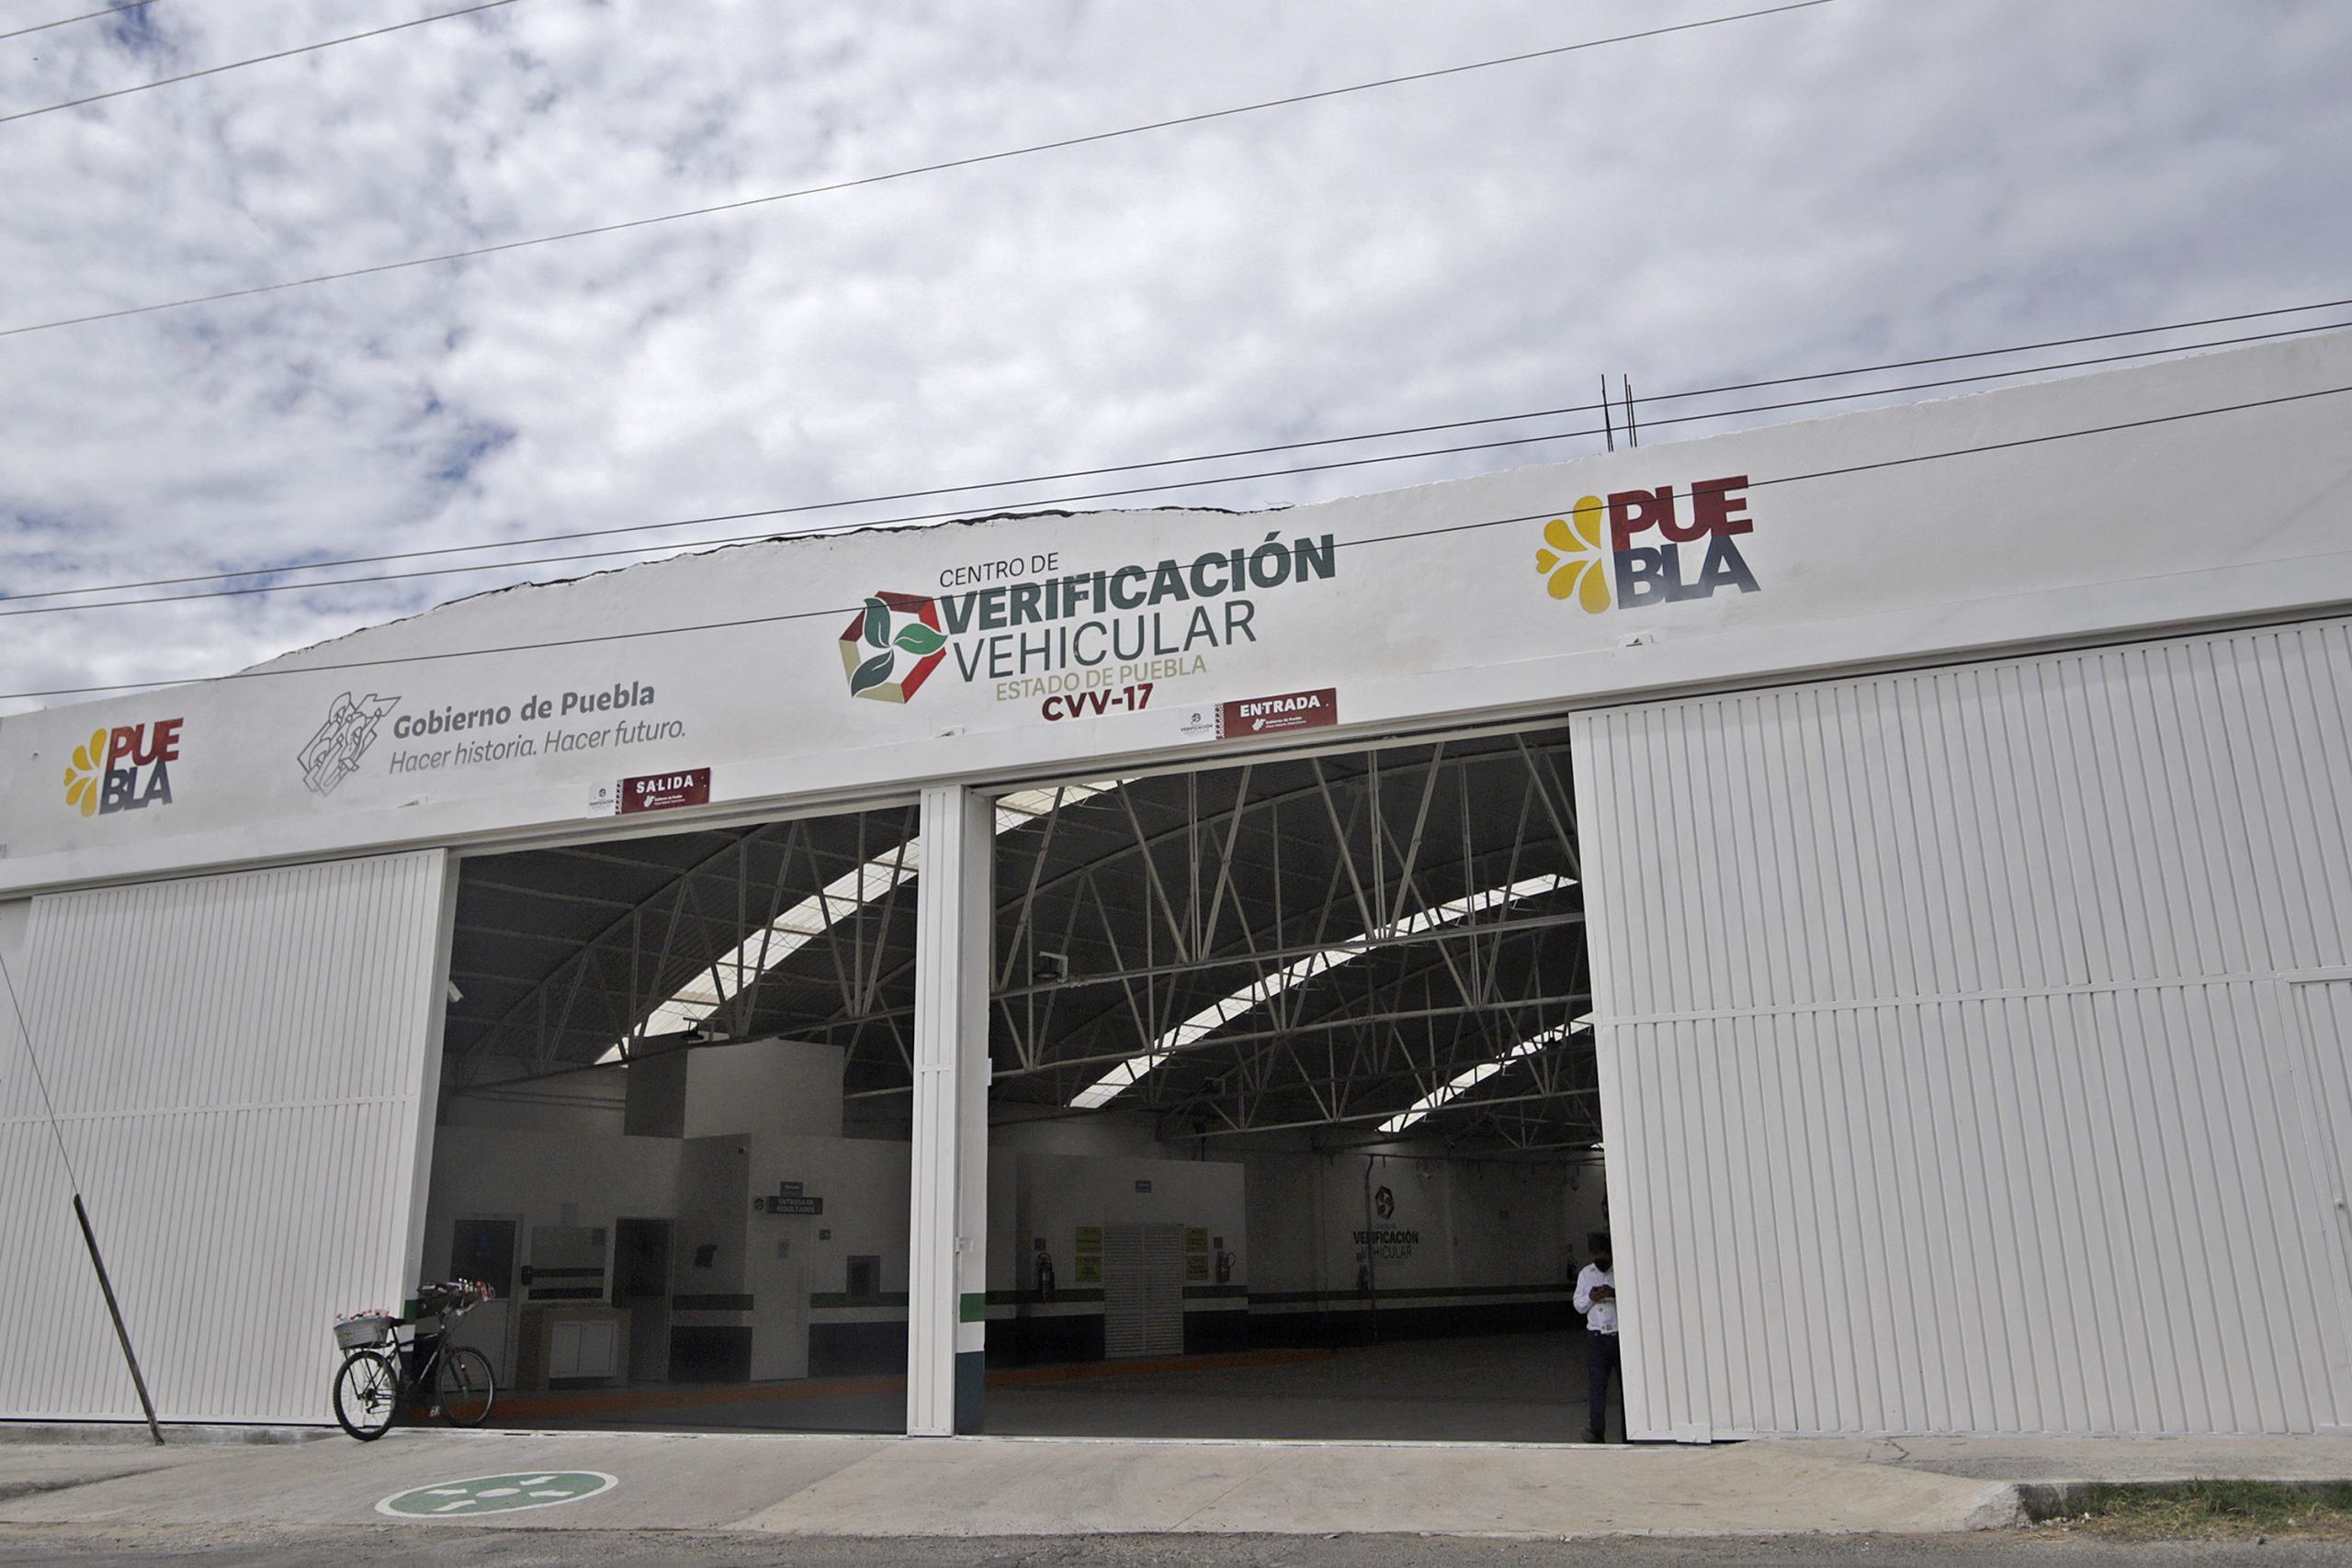 Comienza en 28 días la verificación vehicular obligatoria en Puebla